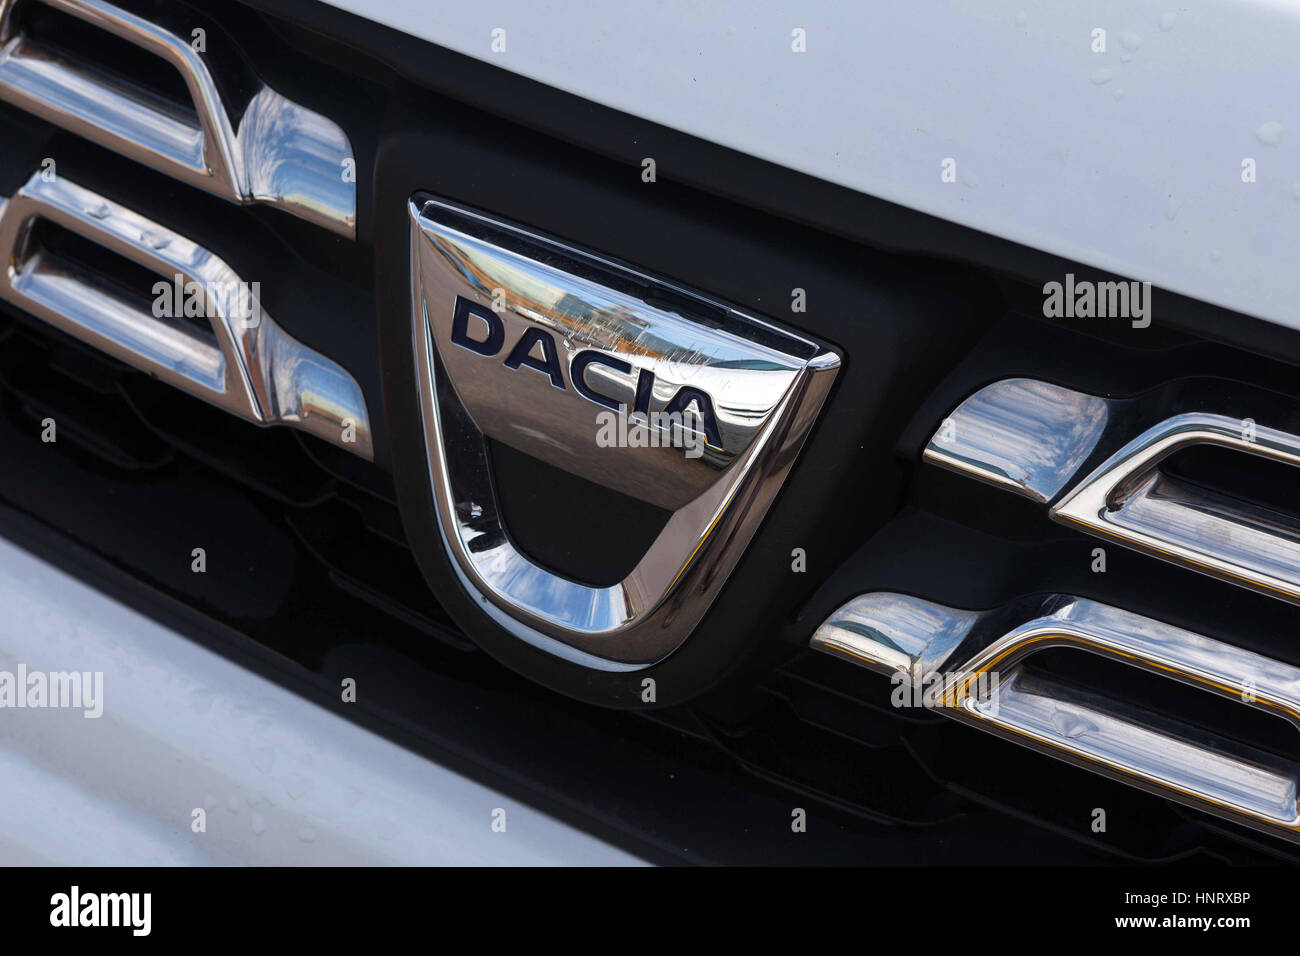 Logo Dacia sur la calandre avant d'une voiture. Dacia est un constructeur automobile roumain, fondé en 1966, et a été une filiale du constructeur automobile français Ren Banque D'Images